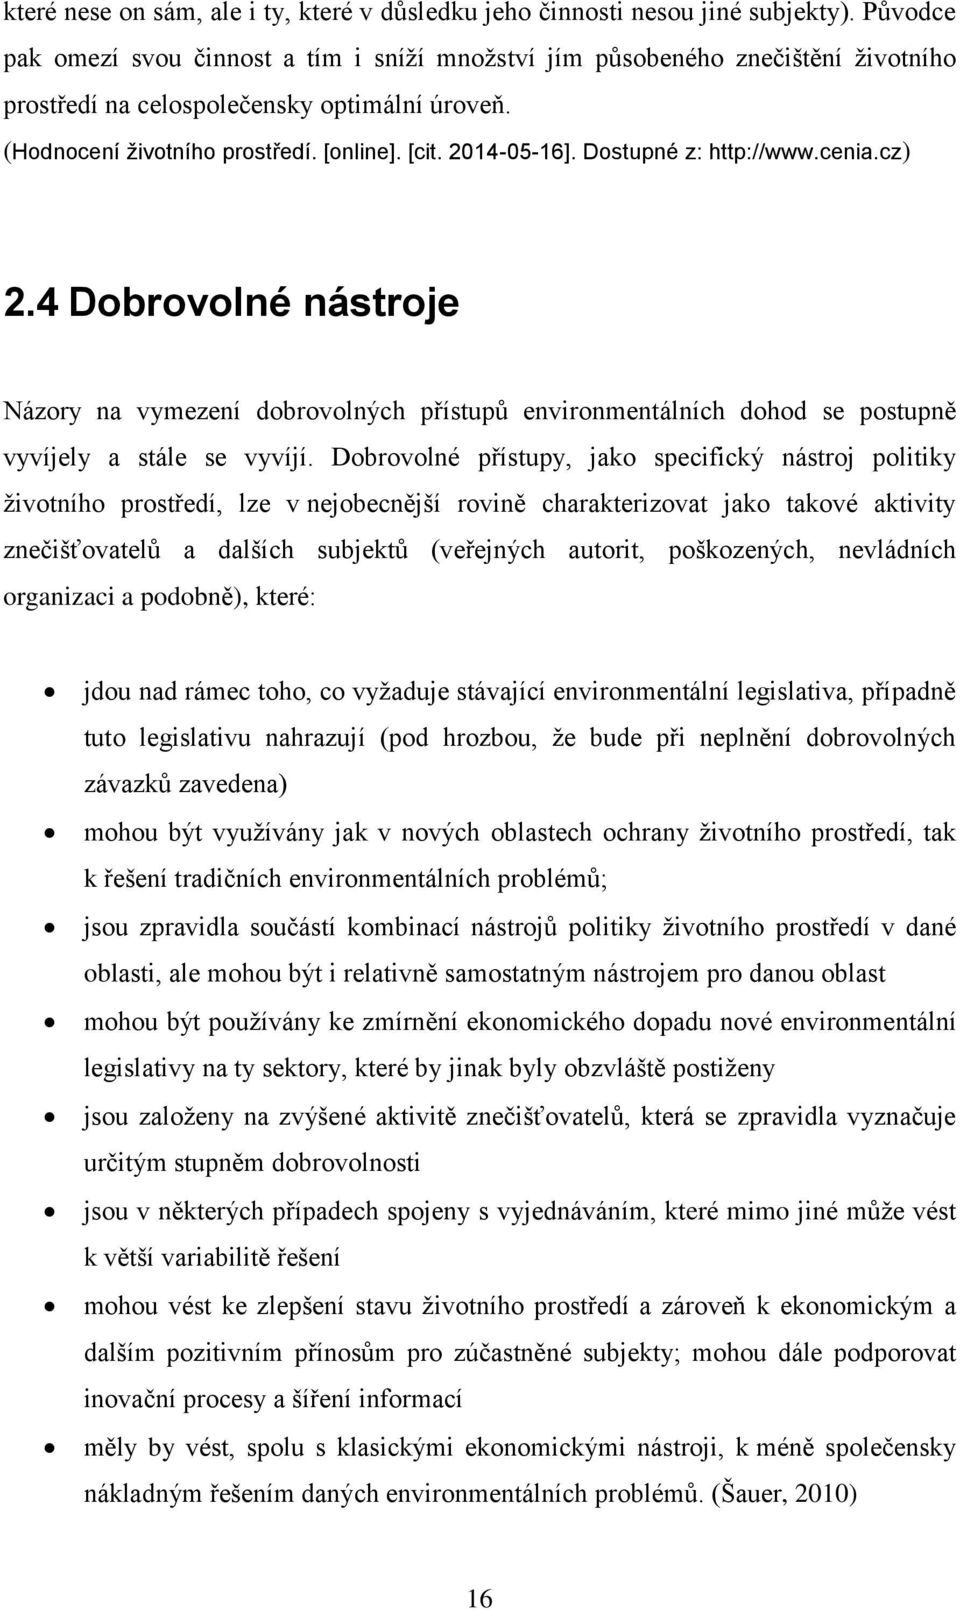 Dostupné z: http://www.cenia.cz) 2.4 Dobrovolné nástroje Názory na vymezení dobrovolných přístupů environmentálních dohod se postupně vyvíjely a stále se vyvíjí.